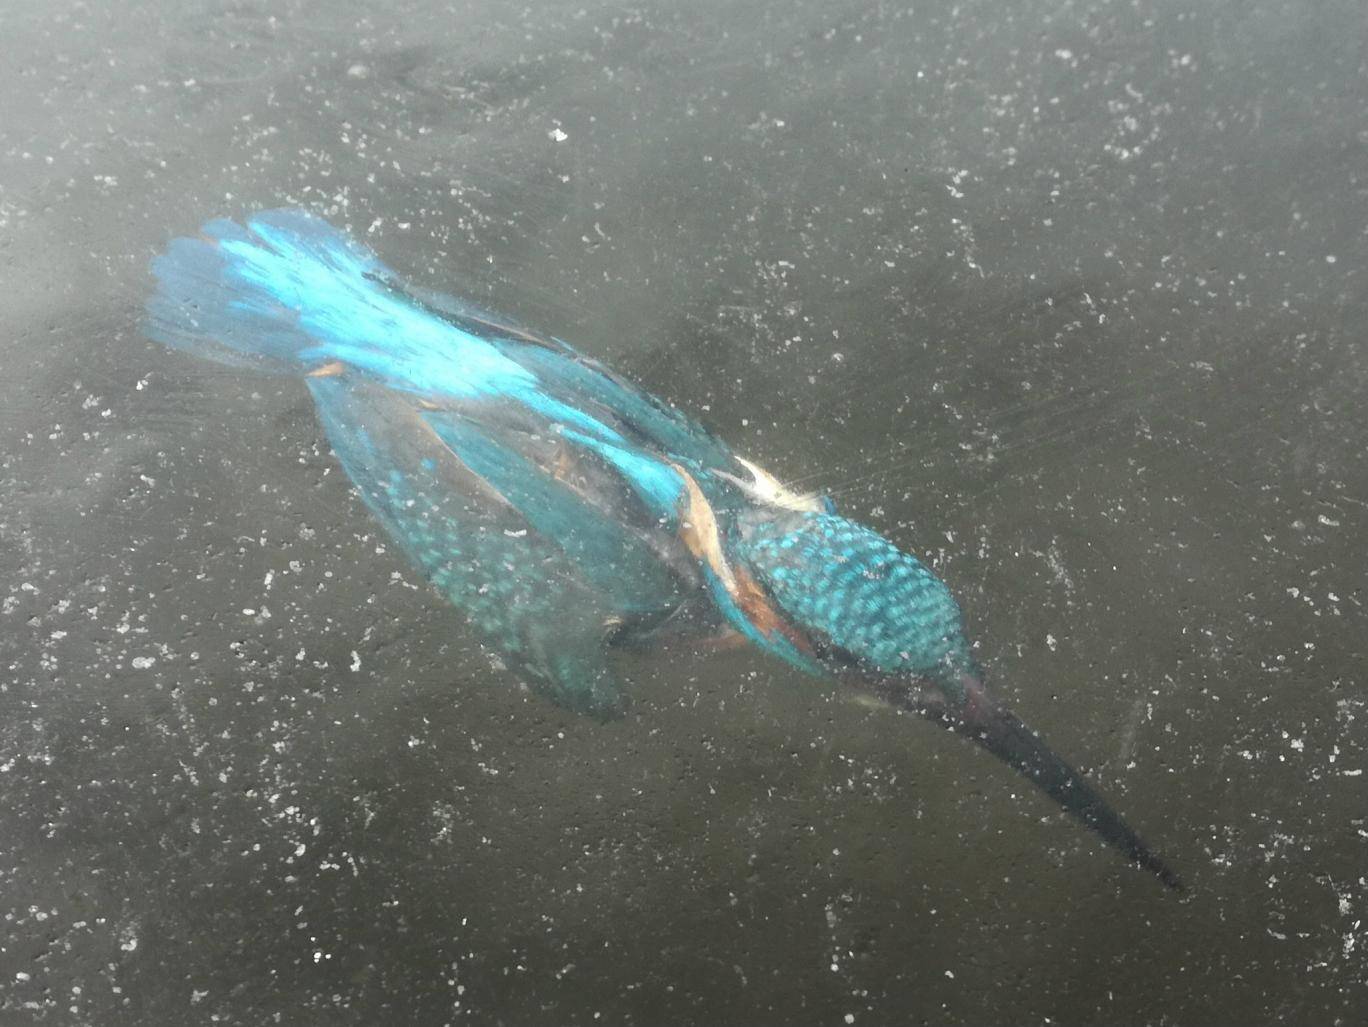 翠鸟入水抓鱼出意外 保持捕鱼动作瞬间遭冰封